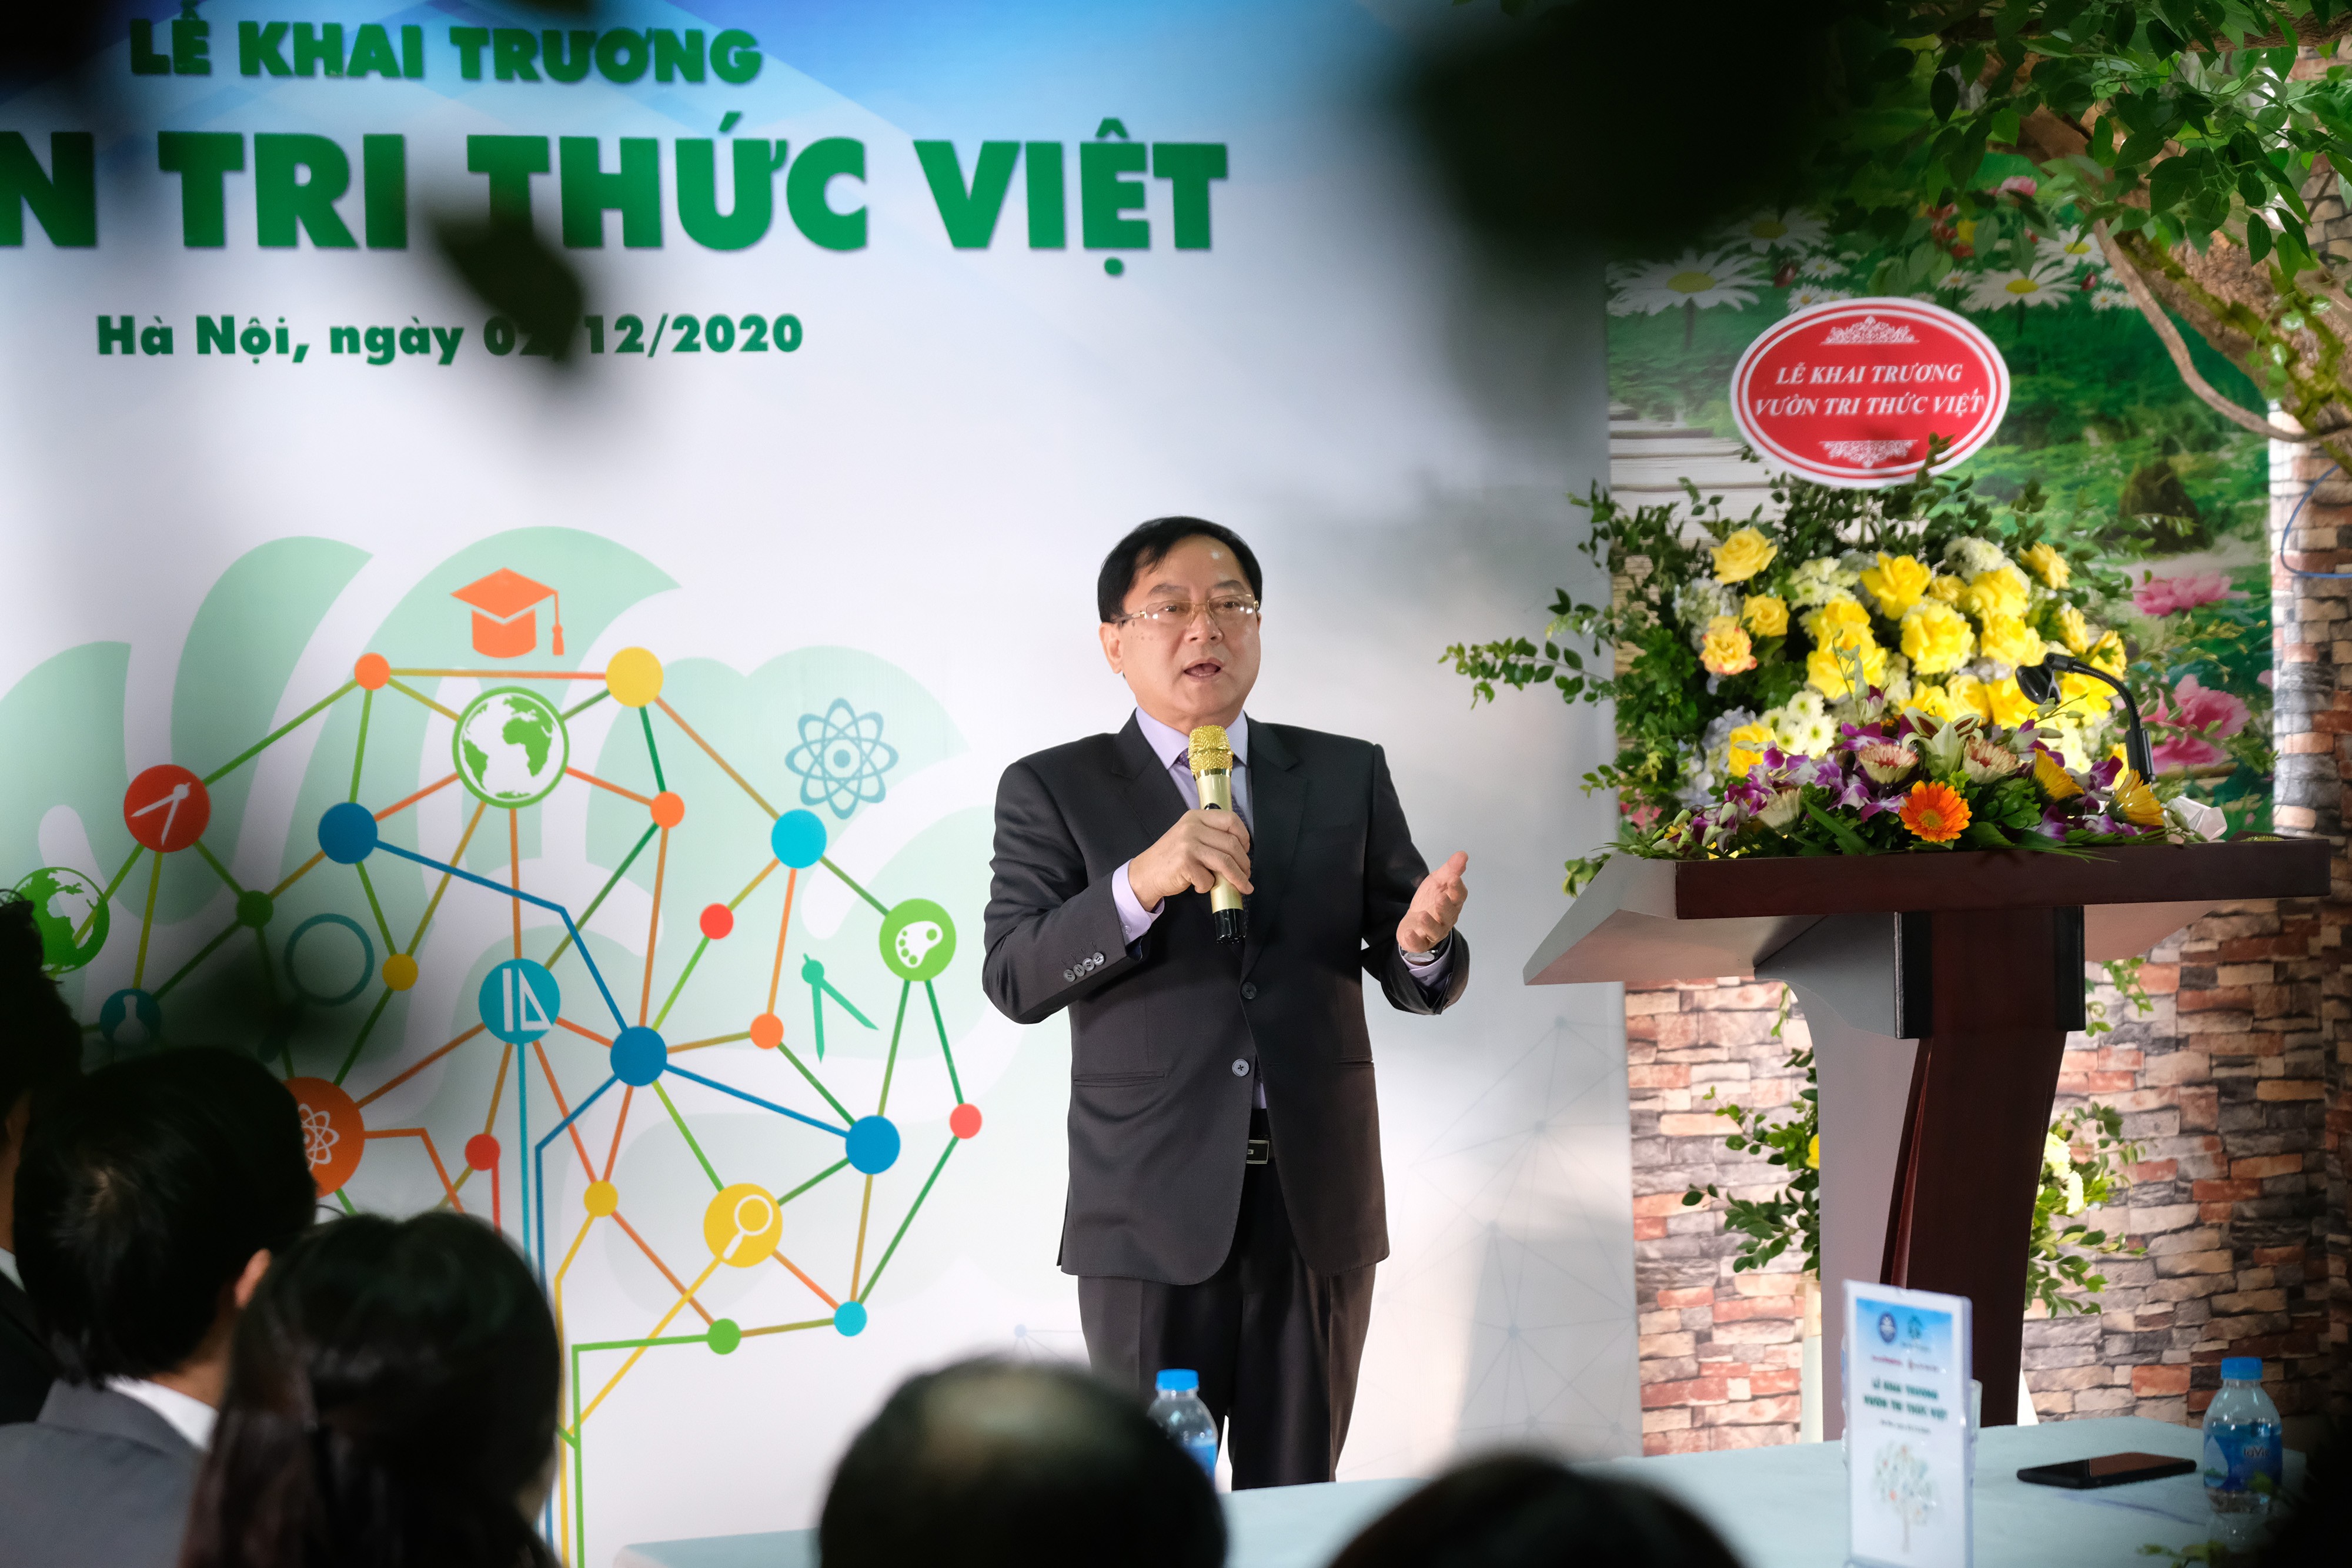 Vườn Tri thức Việt - Không gian văn hoá sáng tạo hút giới trẻ ảnh 3